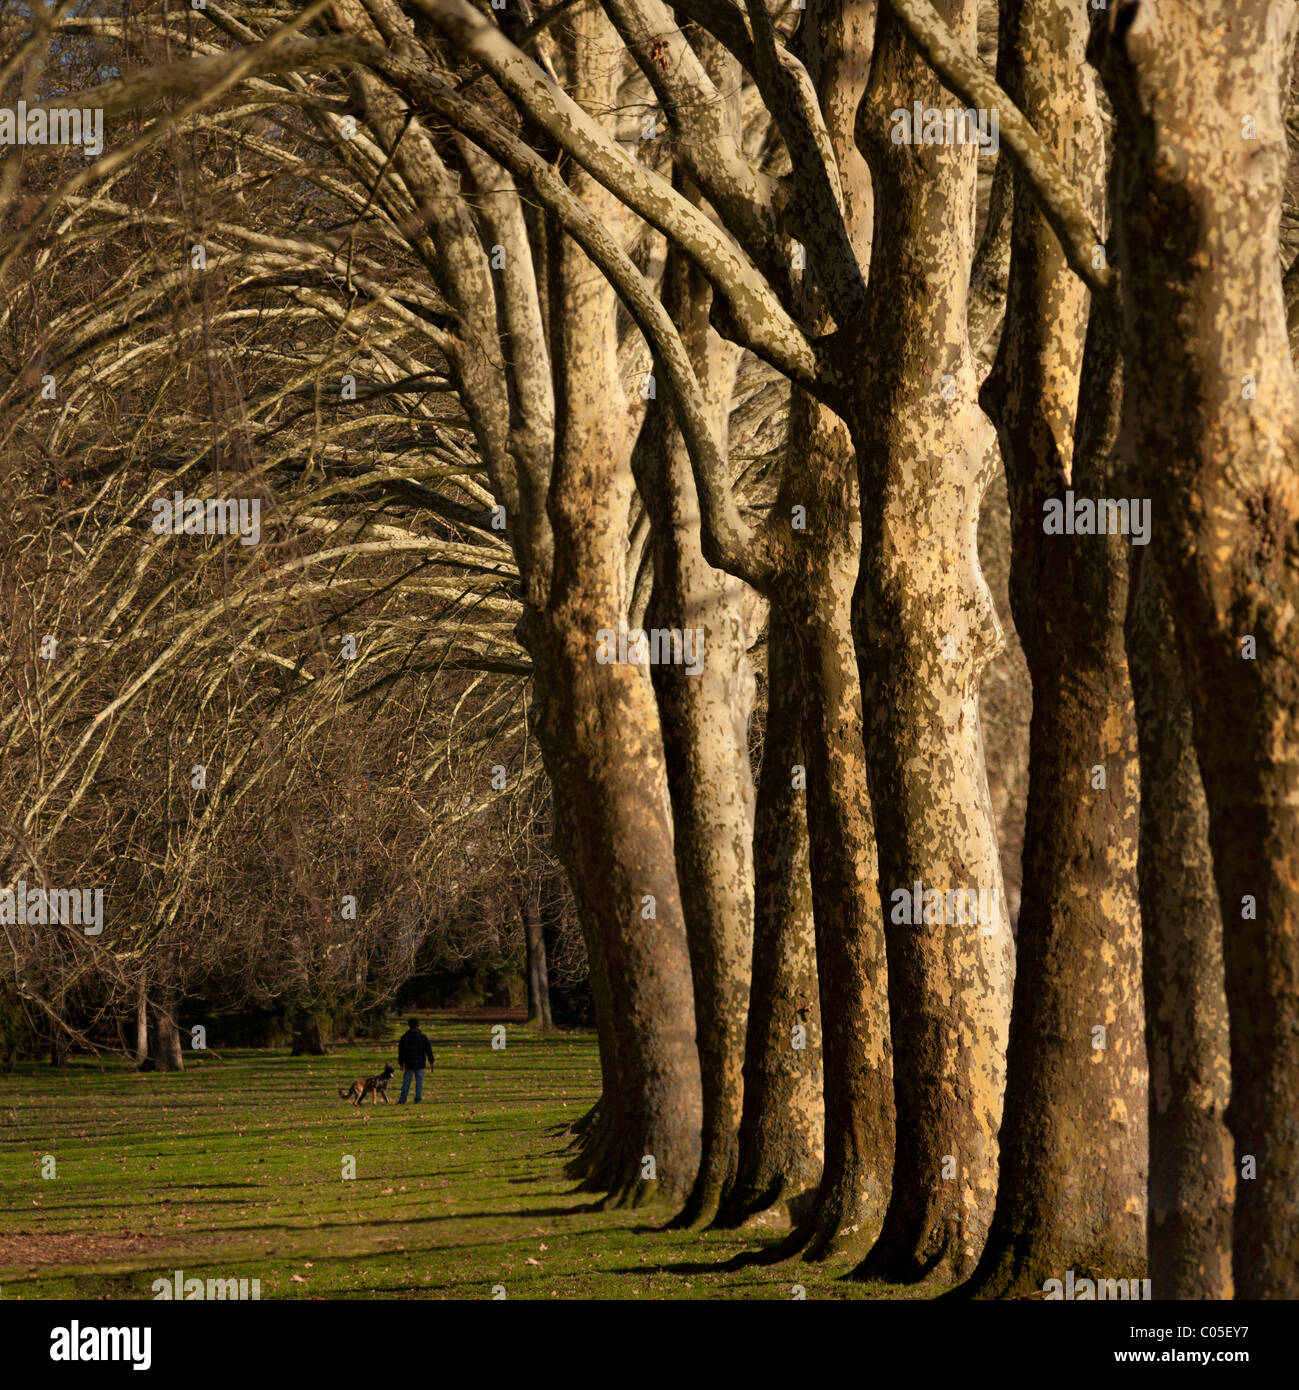 En hiver, une rangée de platanes dans les Bourins, parc à Vichy (France). Platanus x acerifolia. Banque D'Images